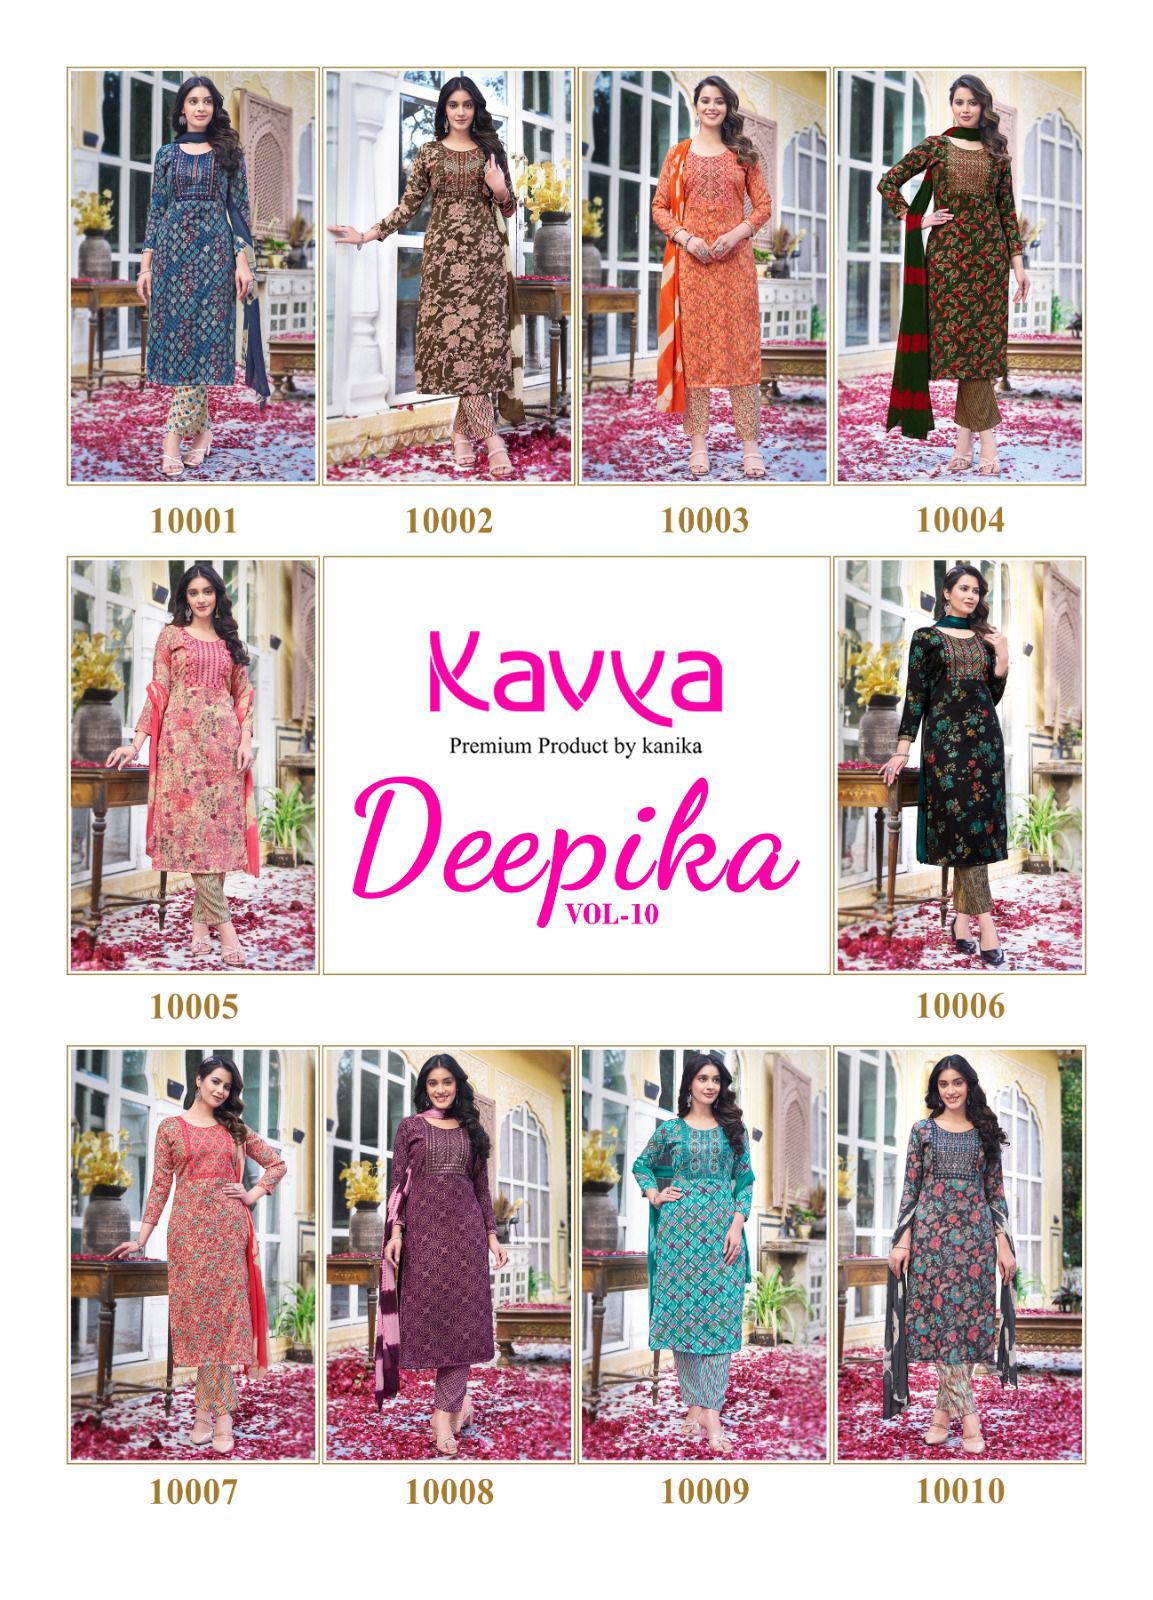 Kavya Deepika Vol 10 collection 12